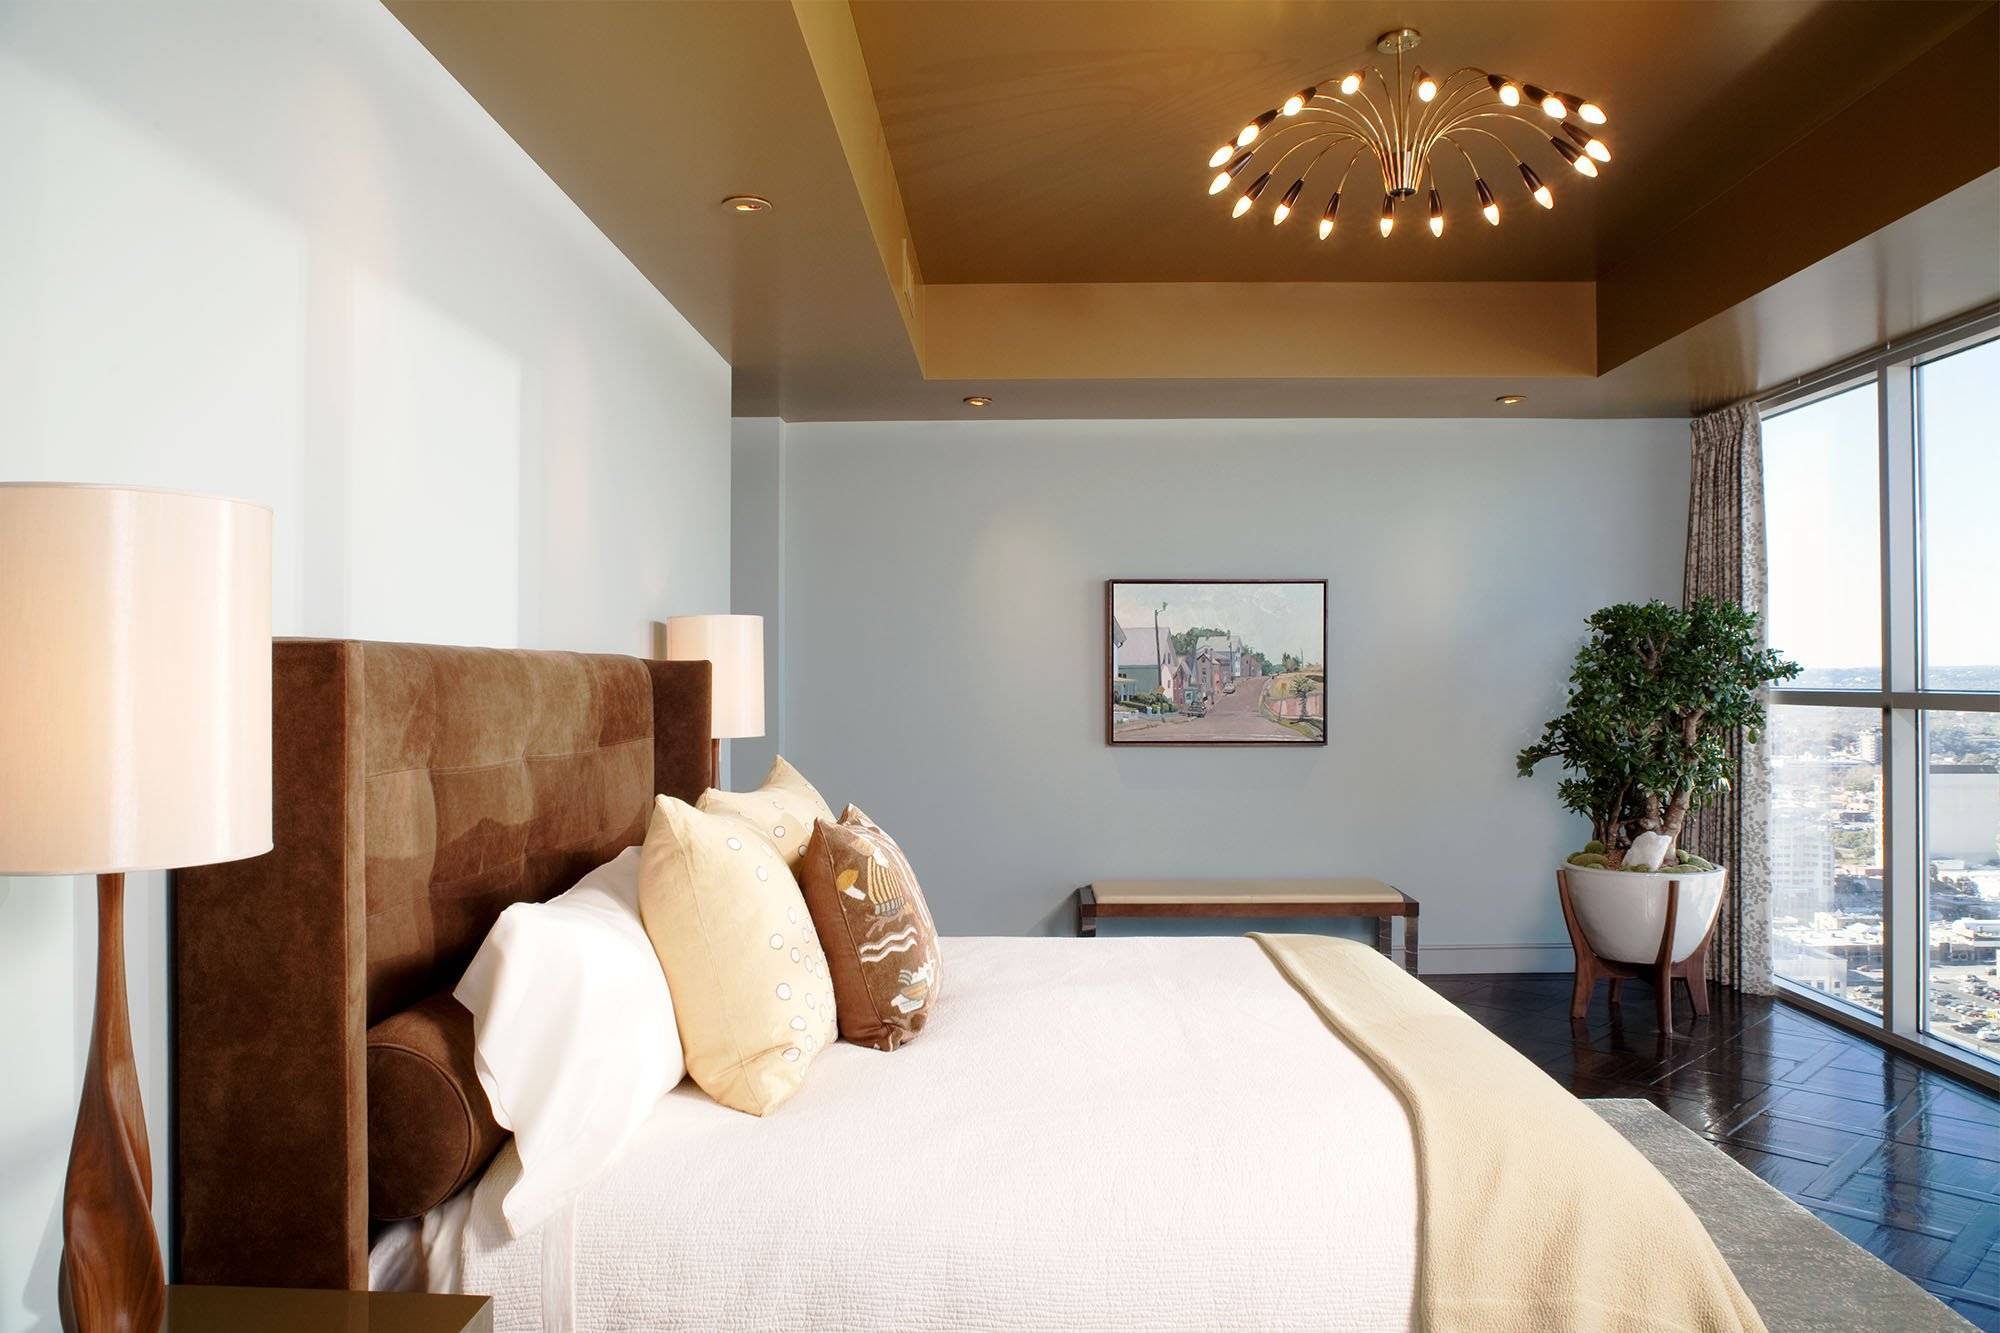 Двухуровневый потолок в спальне - 100 фото красивых идей дизайна